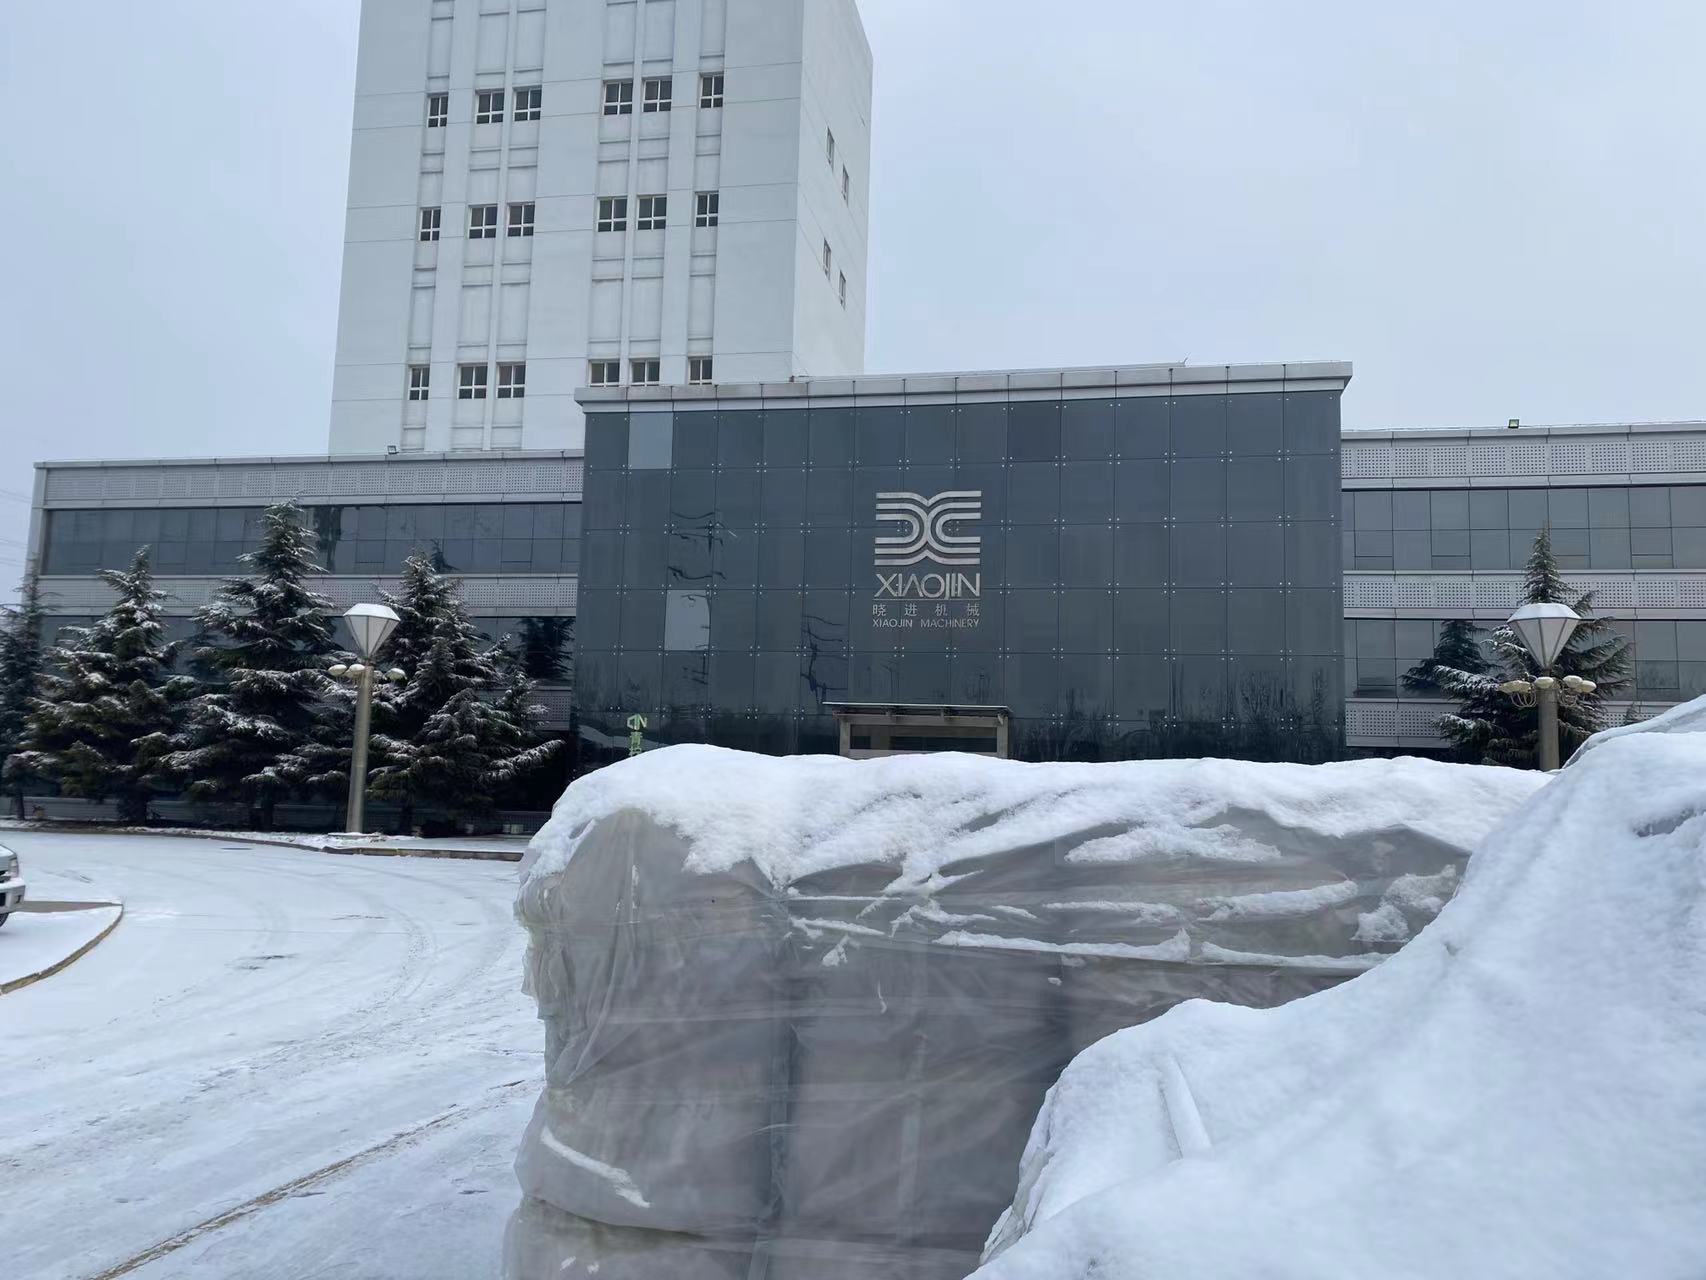 Snowing in Xiaojin machinery